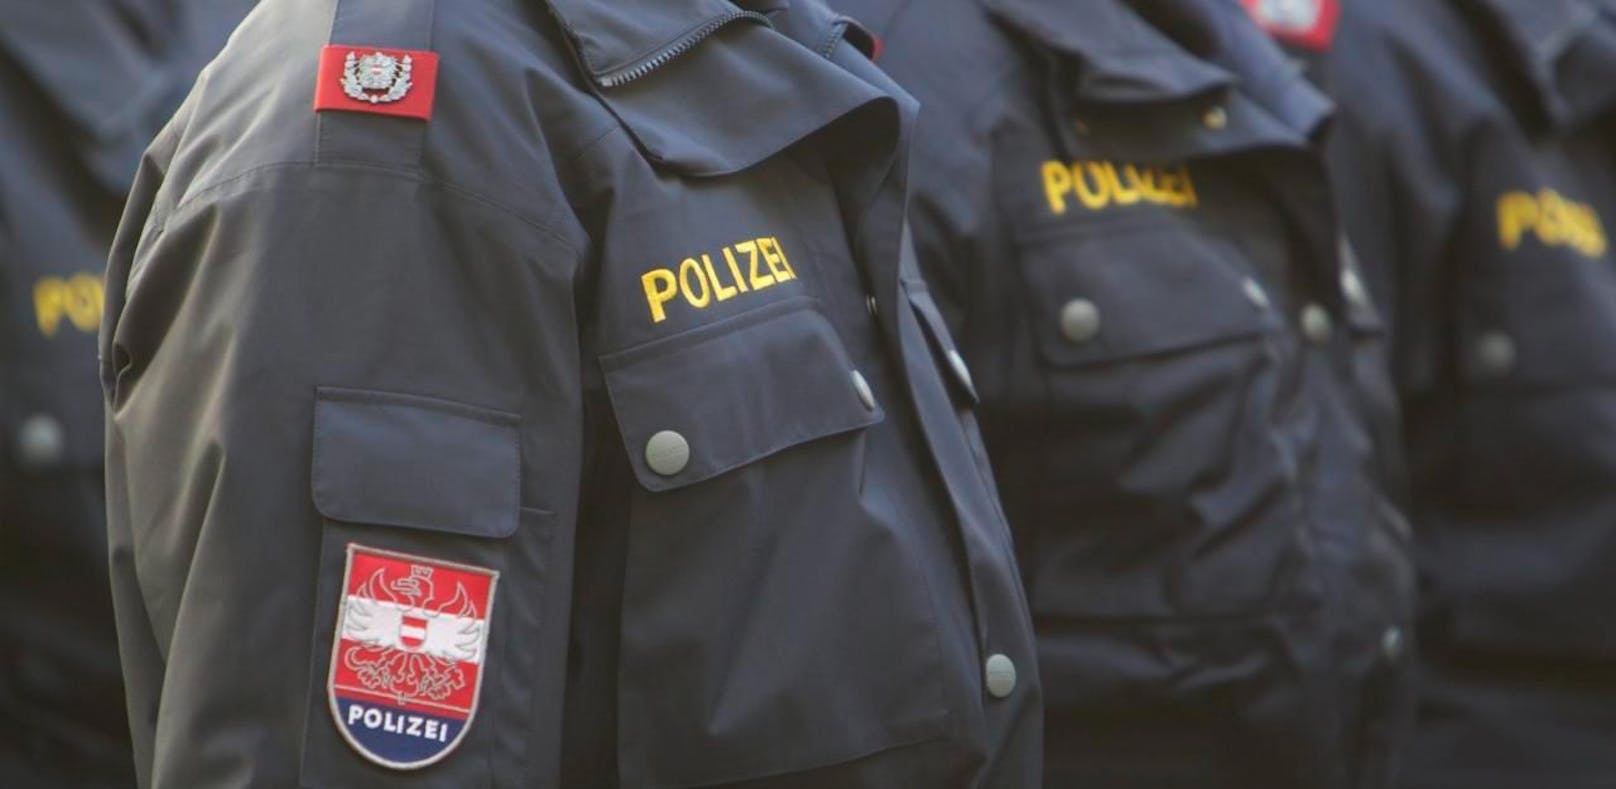 Schwerwiegender Verdacht gegen einen 26-jährigen Polizeischüler in Wien (Symbolbild).